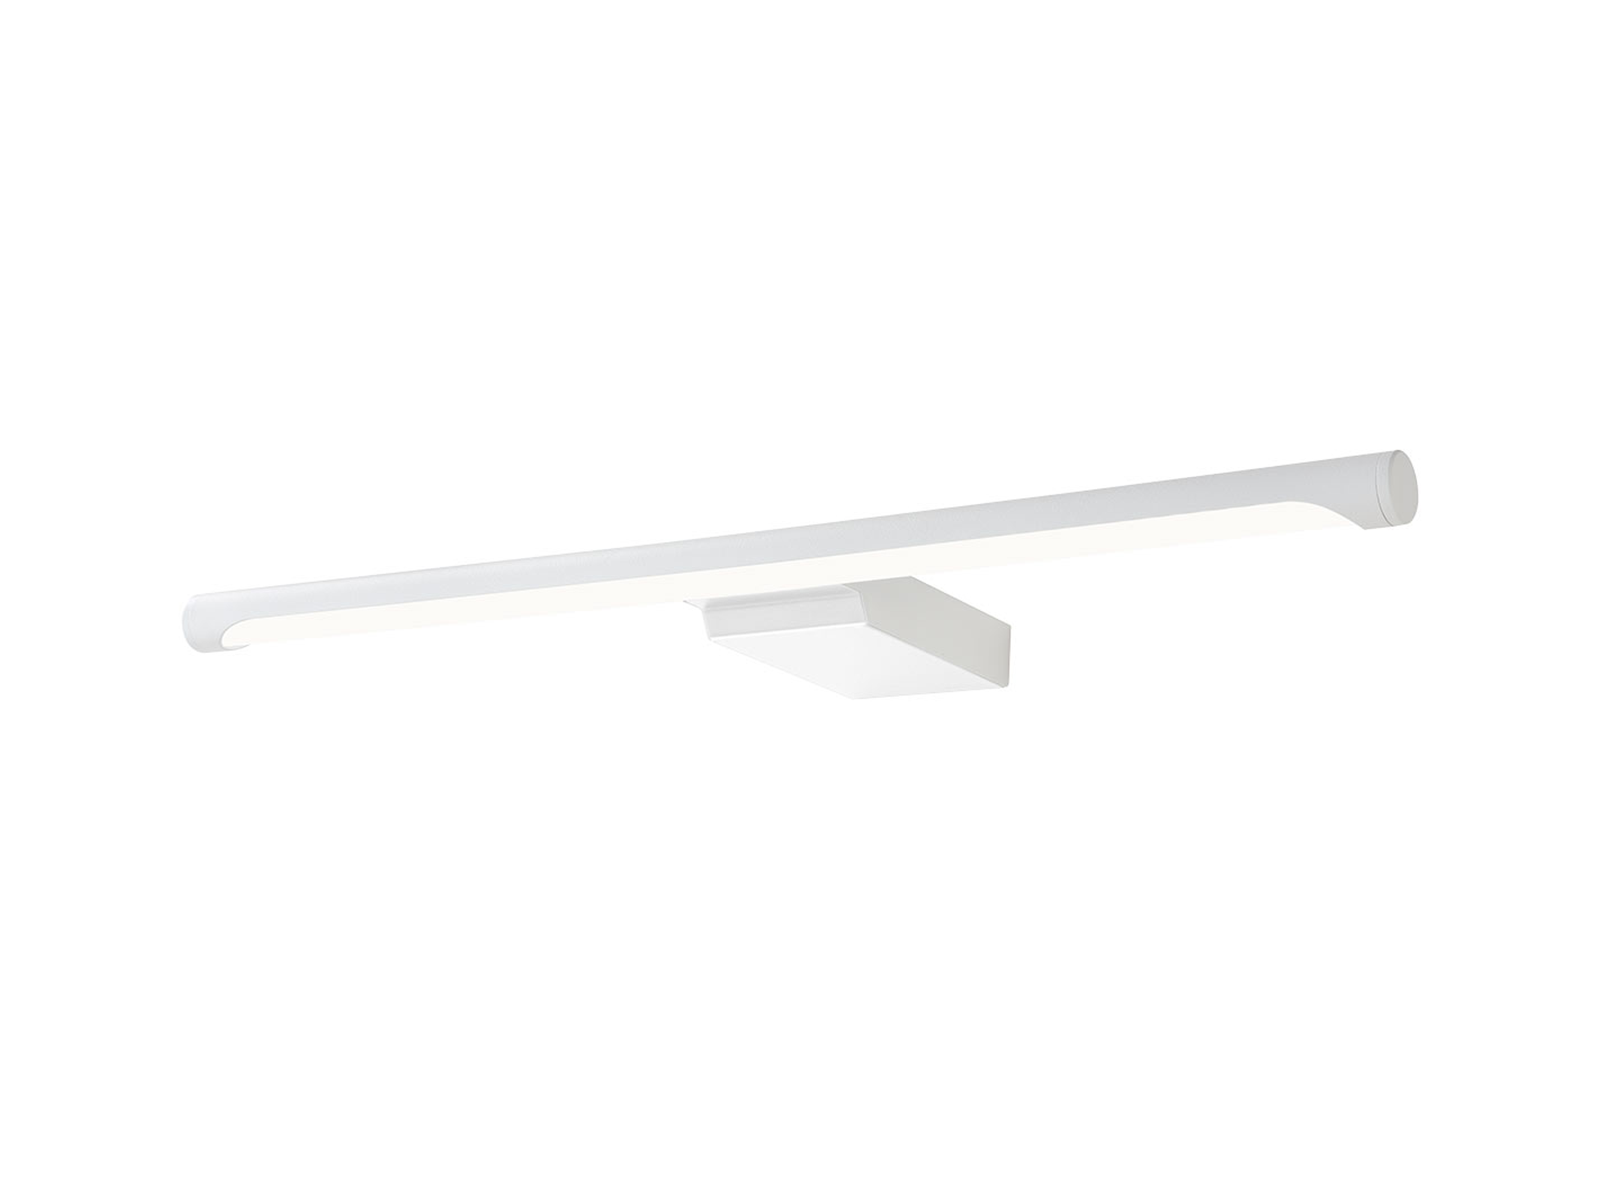 Nástěnné LED svítidlo Alf bílé, 11W, 3000K, 54cm